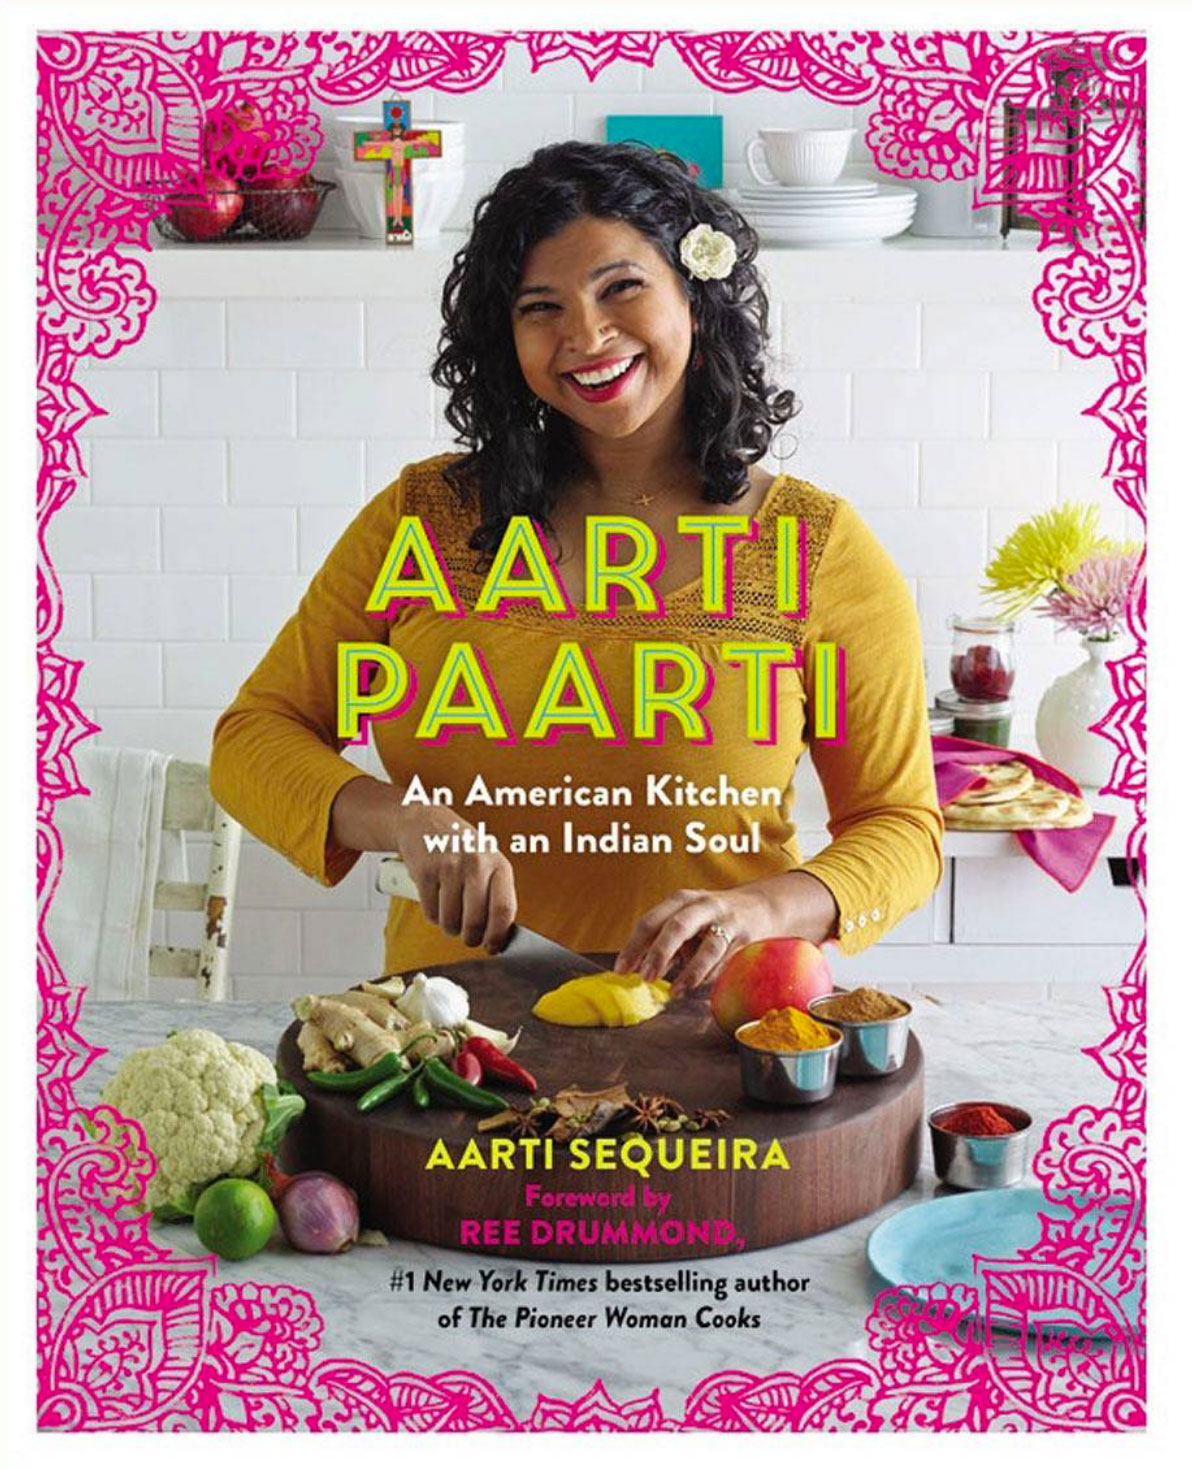 Aaarti-Party-Cookbook.jpg